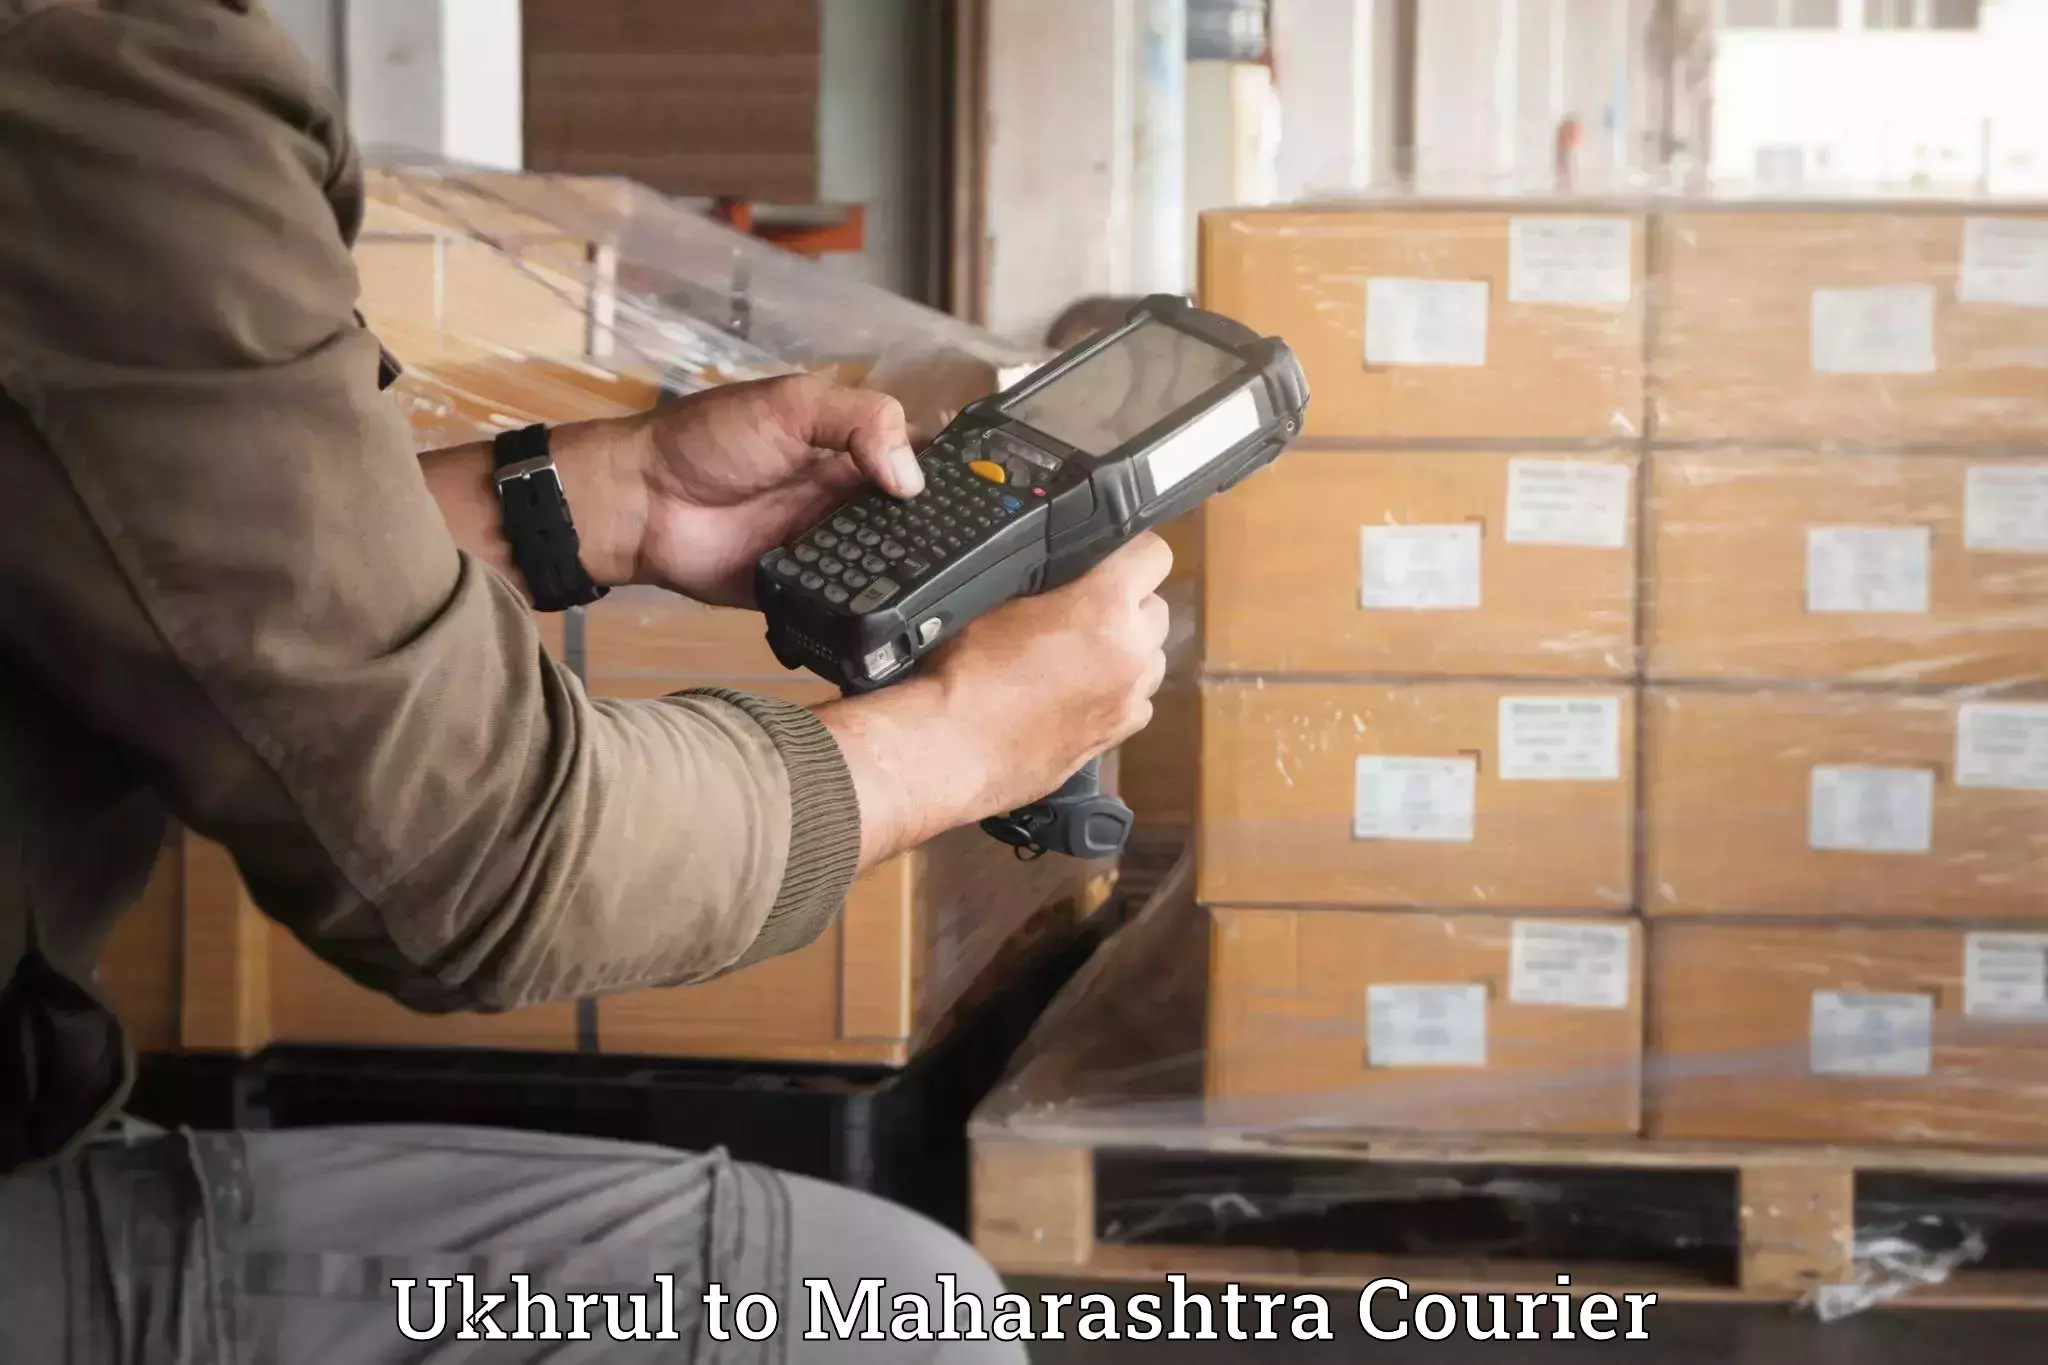 Baggage shipping service Ukhrul to Maharashtra